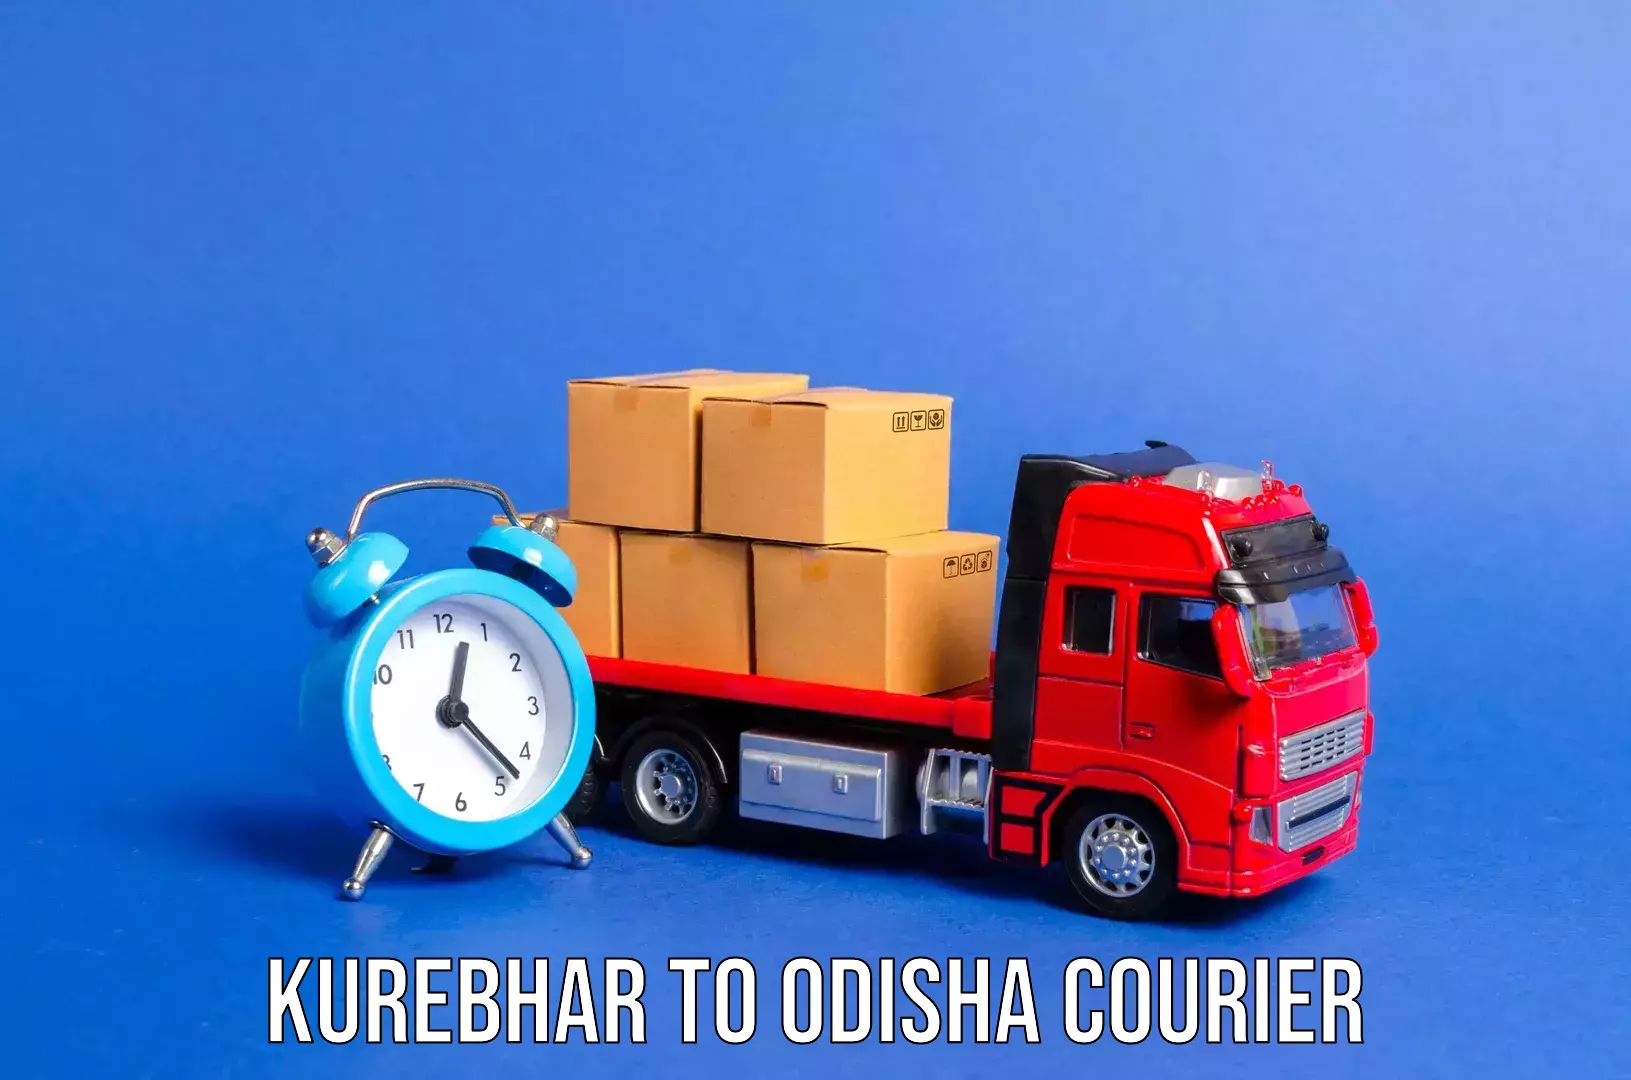 Luggage transfer service Kurebhar to Baleswar